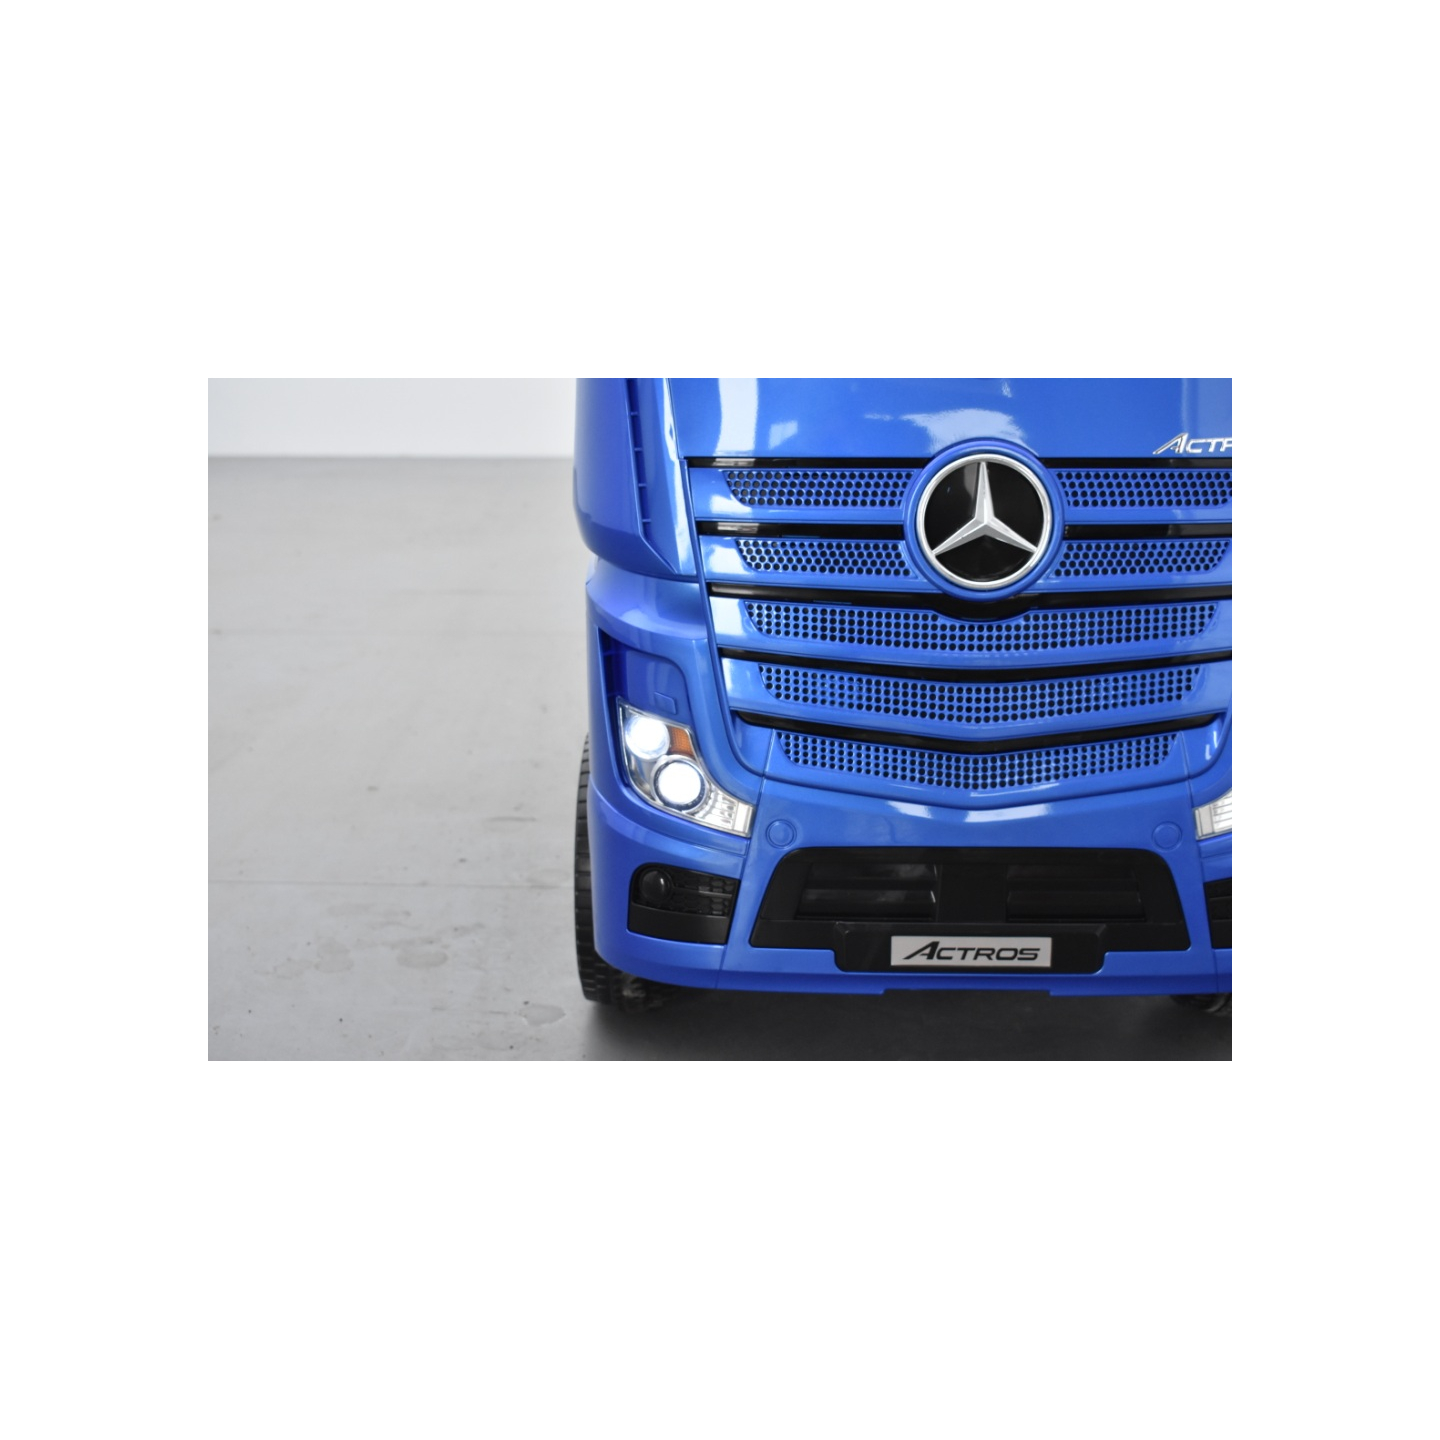 Mercedes Actros Bleu métallisé 2 x 12V, camion électrique enfant 12 volts télécommande parentale 2.4 Ghz, 12V 14Ah, 4 moteurs